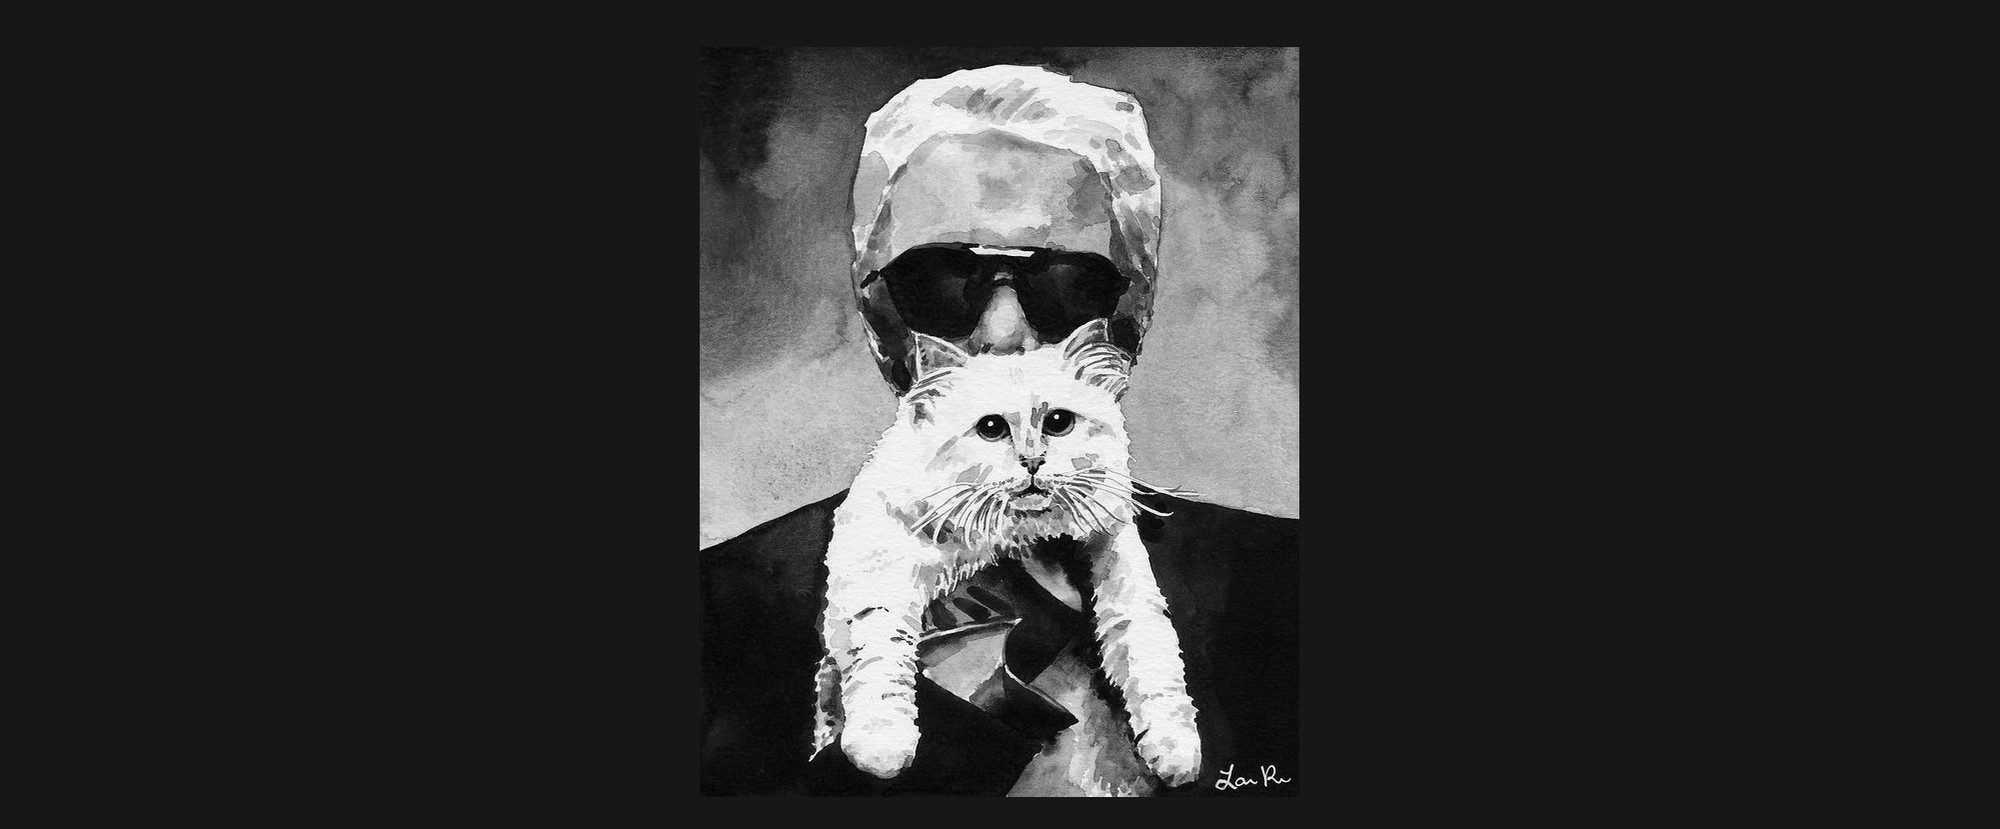 Karl Lagerfeld: 85 năm cuộc đời chỉ gắn liền với hai chữ, vài người đàn ông và một chú mèo - Ảnh 16.